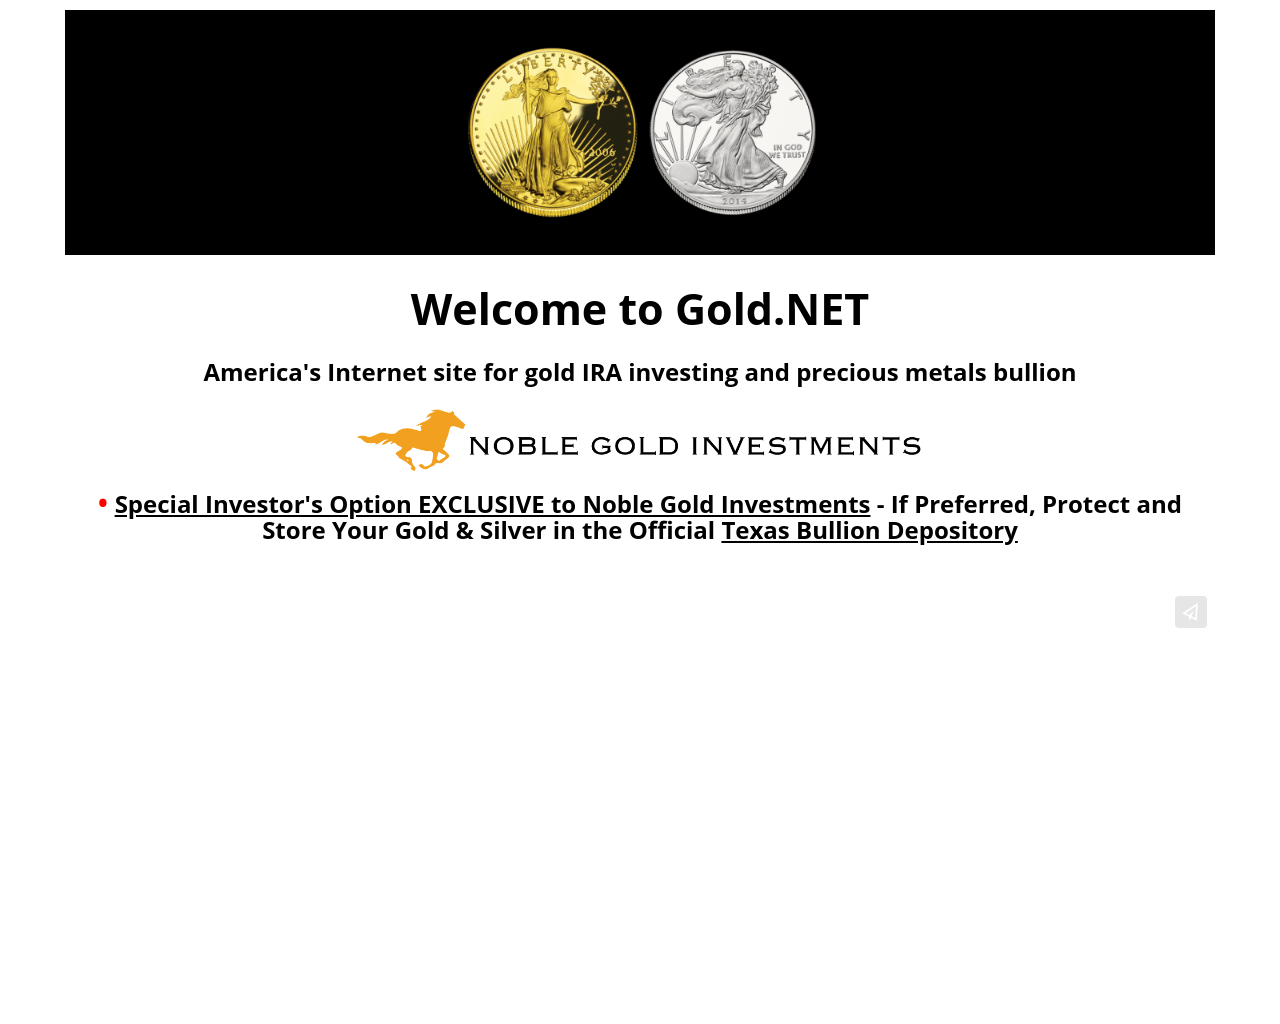 gold.net